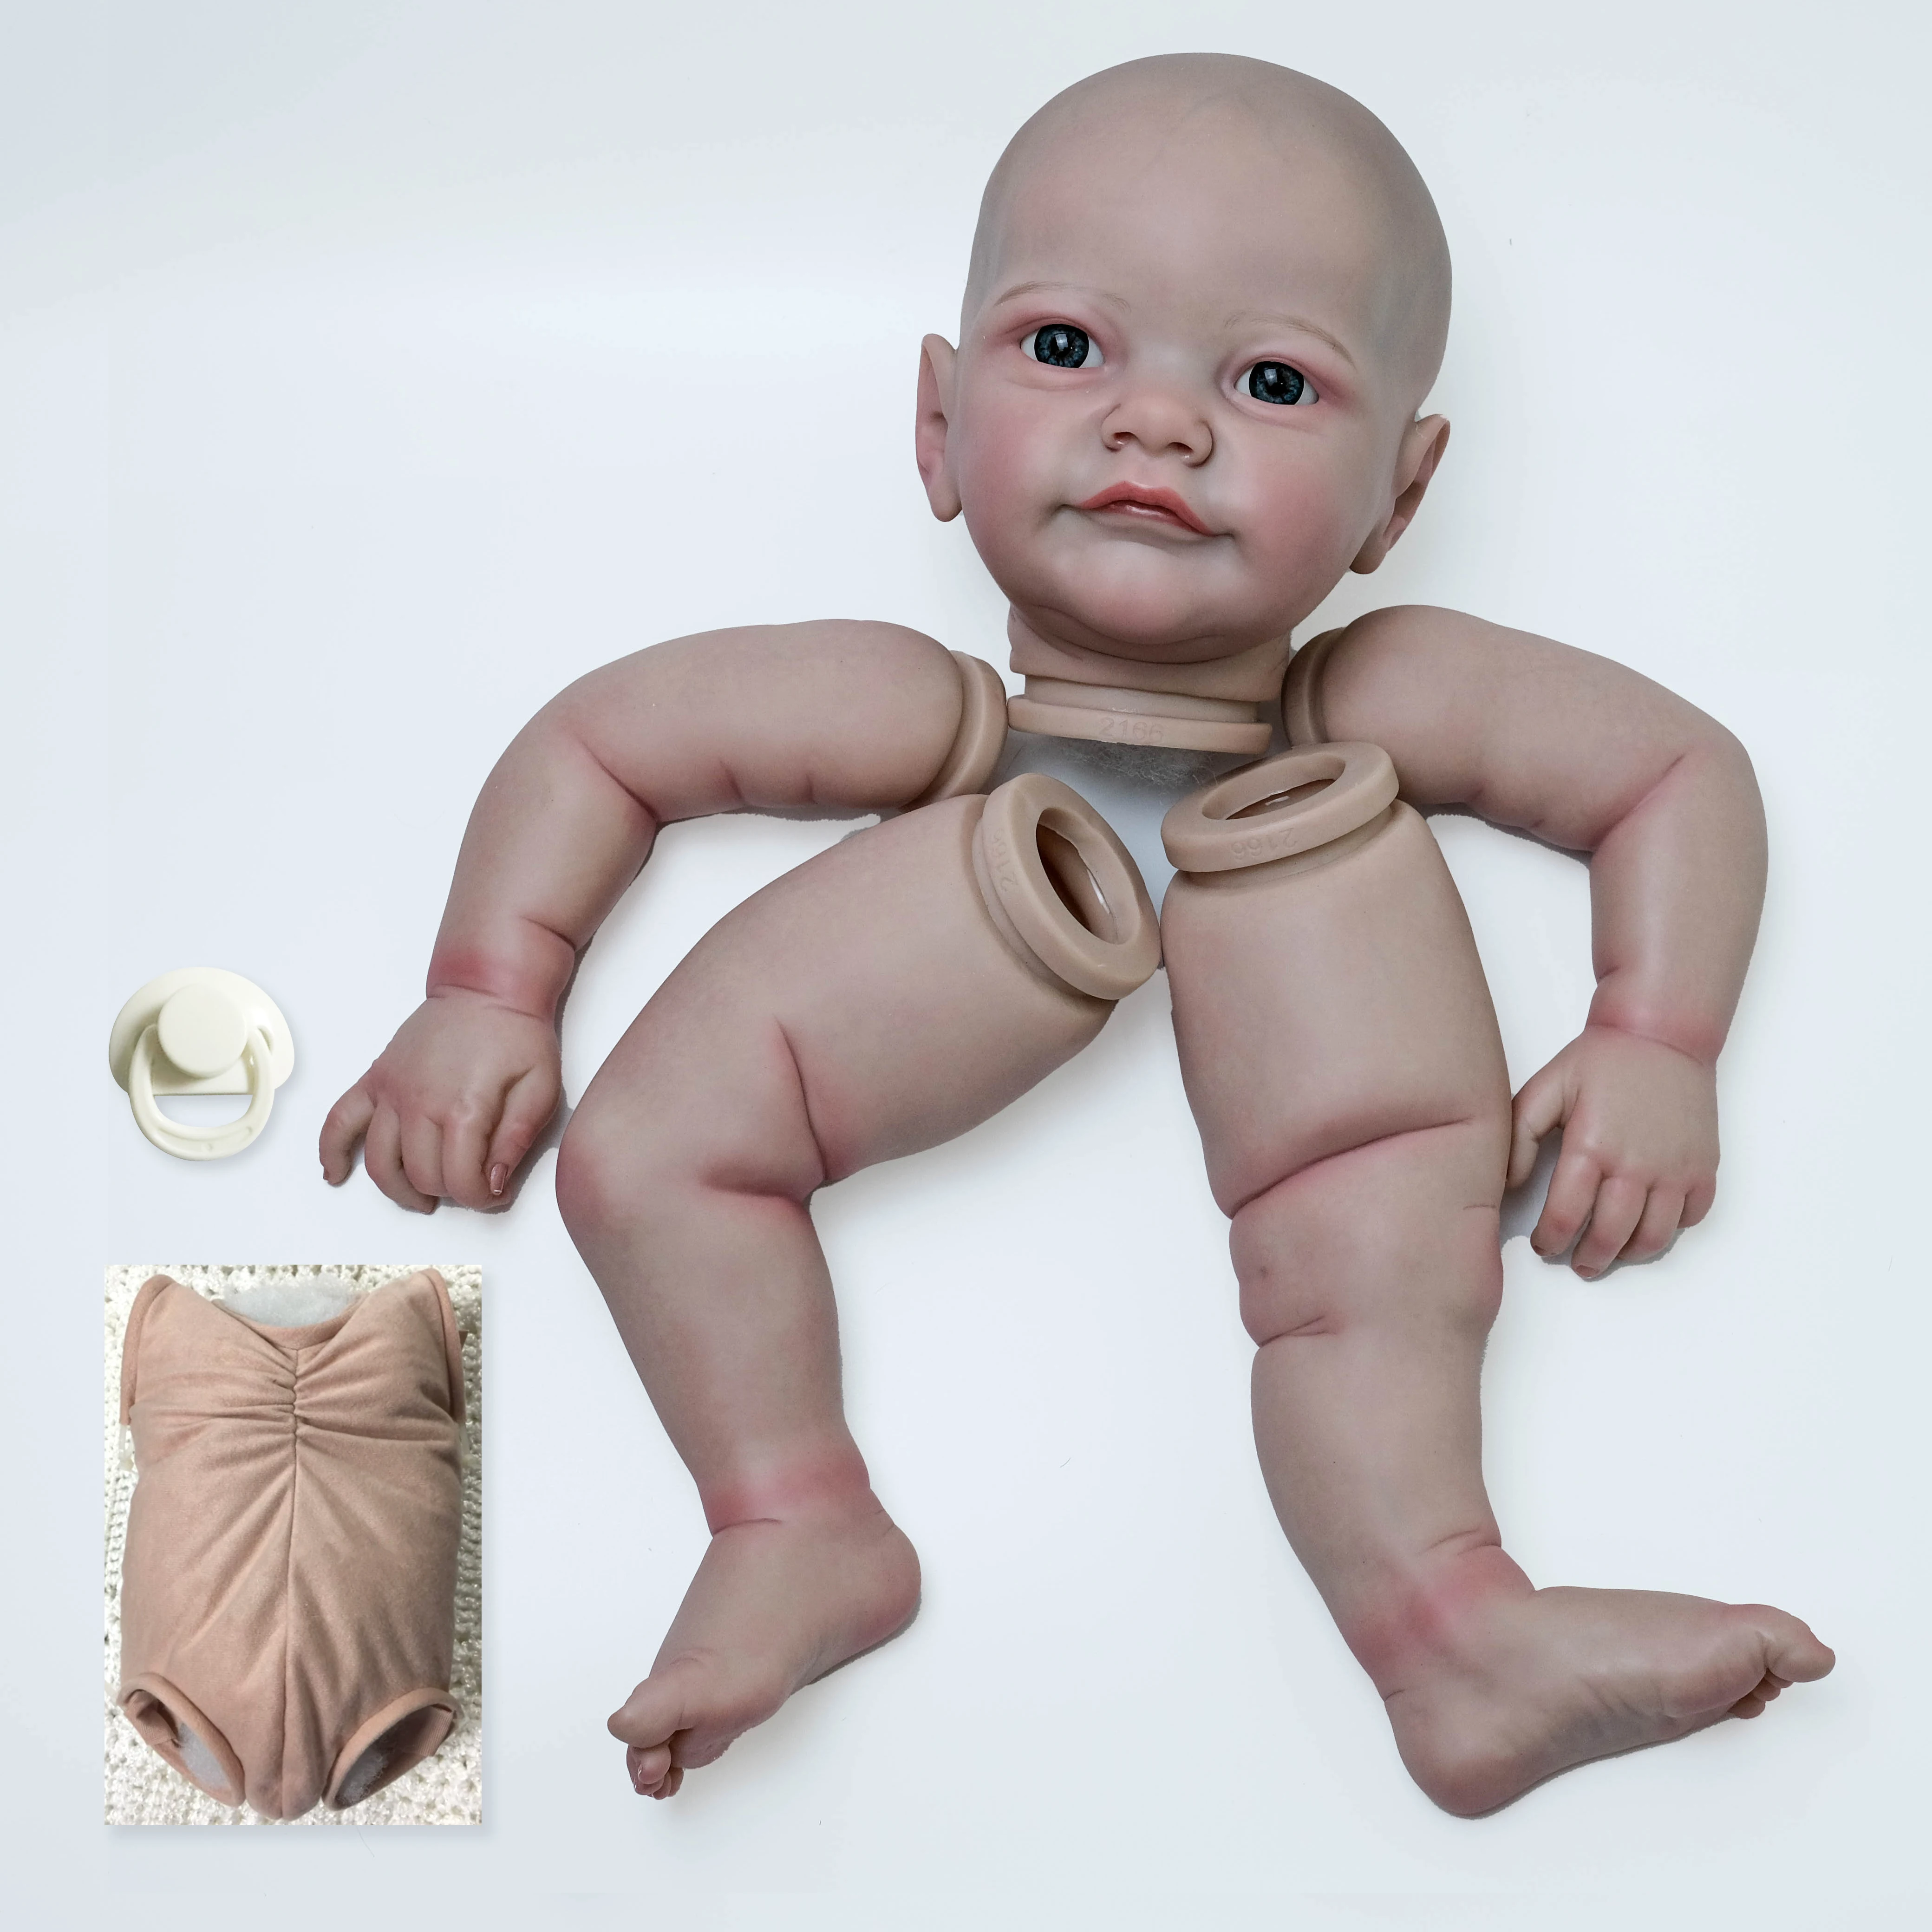 

Готовая кукла размером 24 дюйма, уже окрашенные комплекты тобиа, очень реалистичные, со многими деталями, венами, как на картинке с дополнительным телом